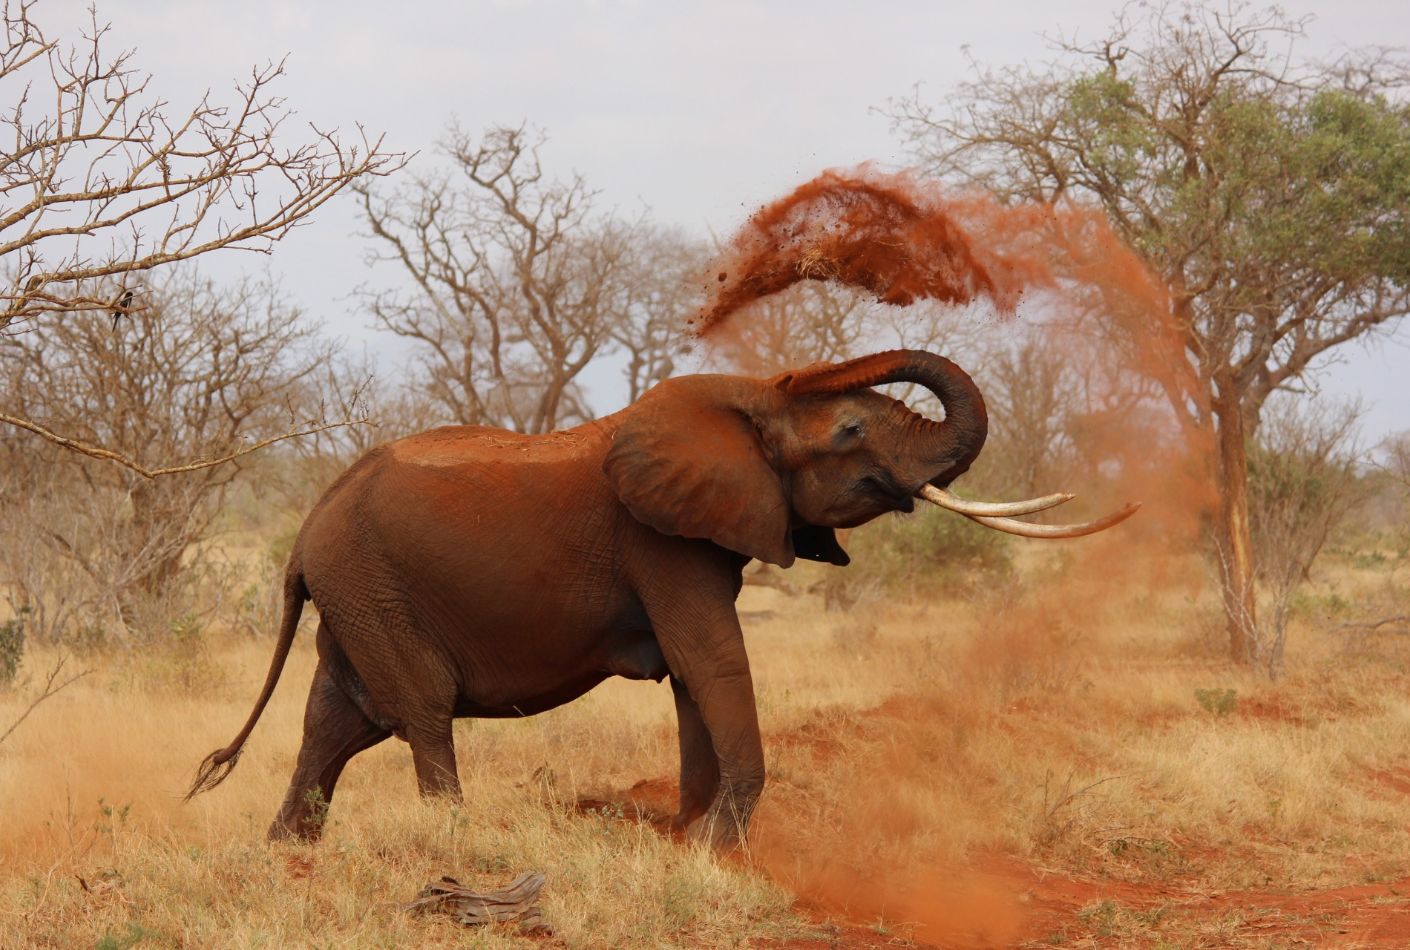 Elefante en Kenia